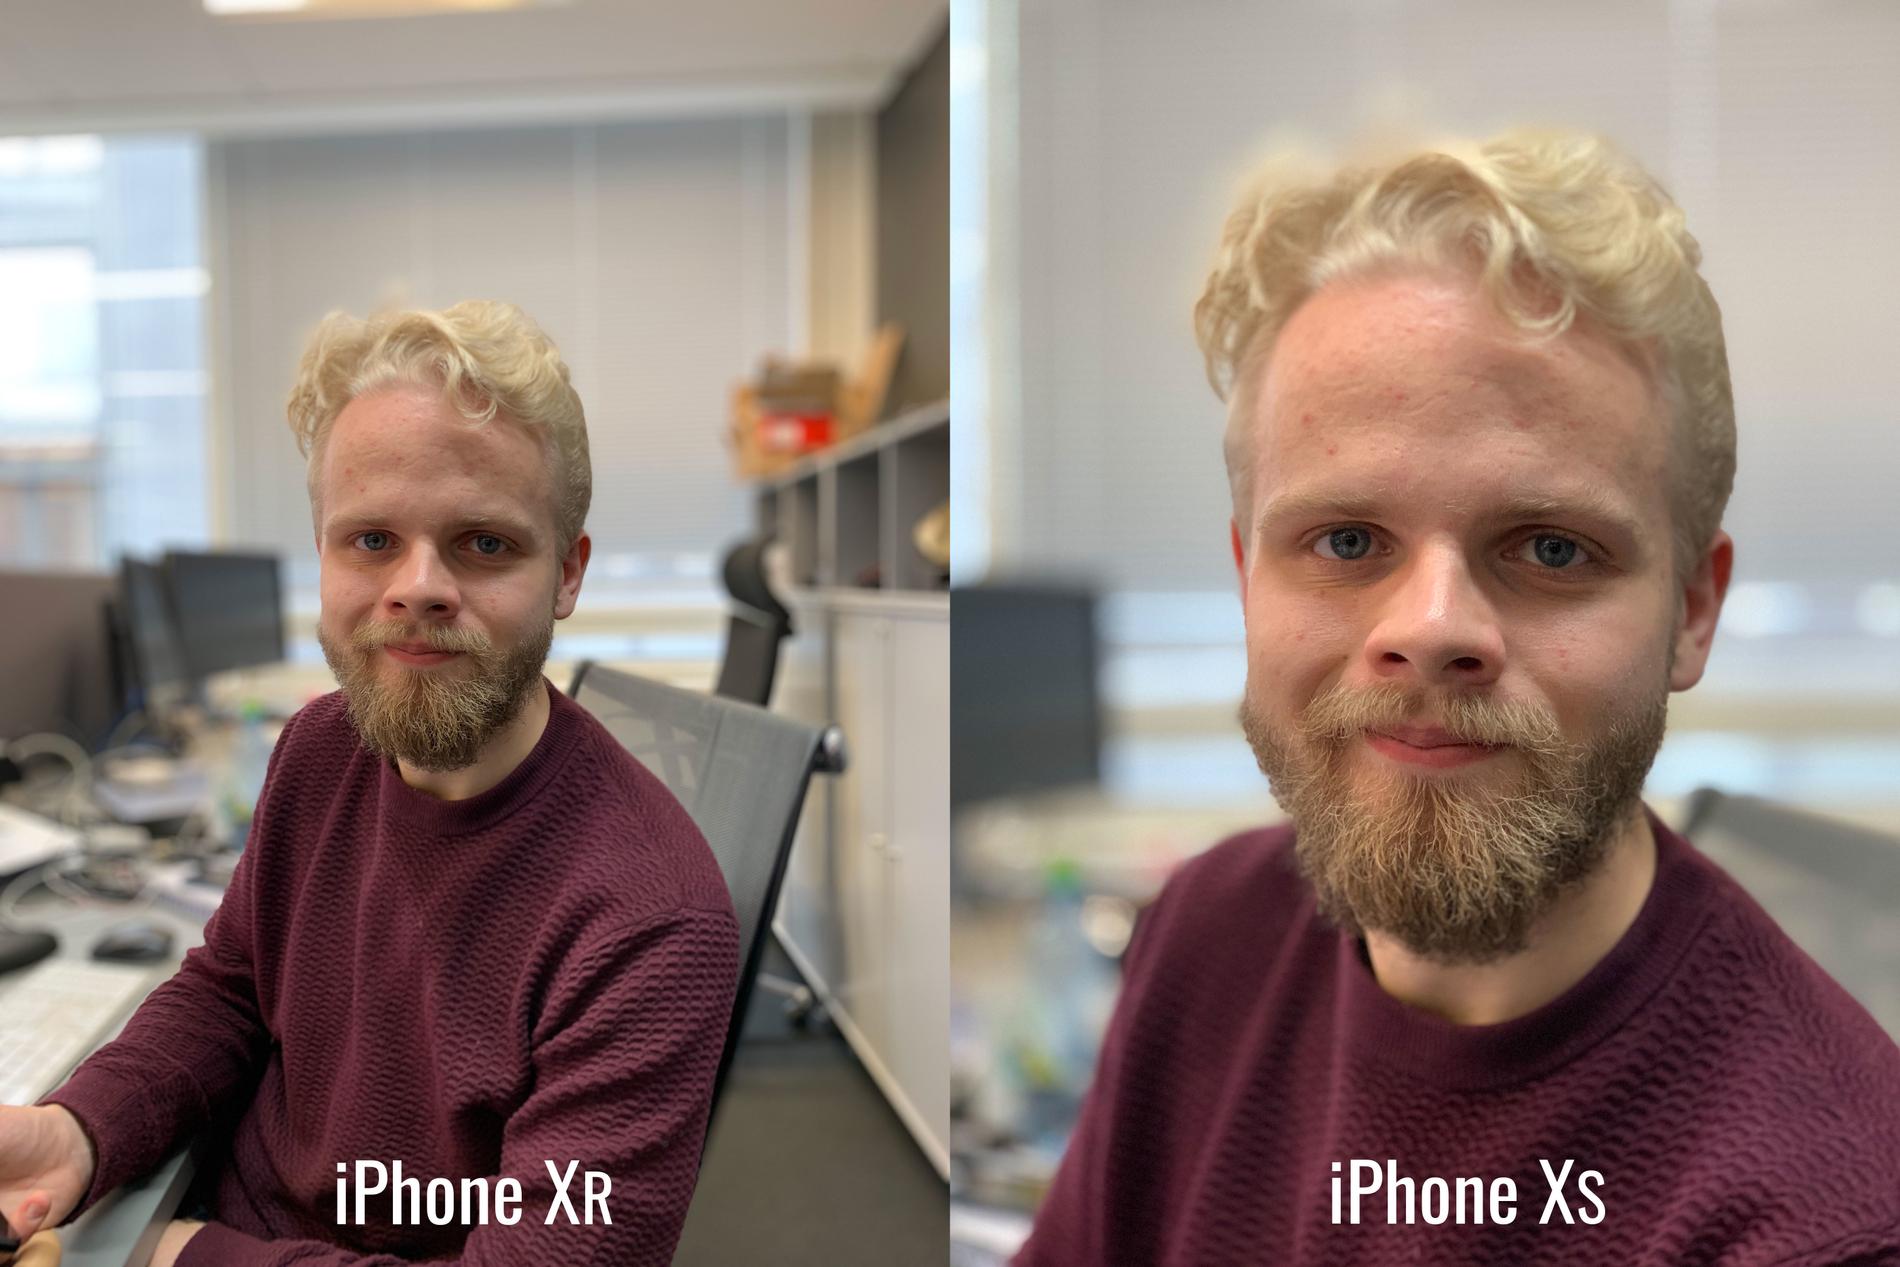 Trots den enda kameran, lyckas Iphone Xr i bland ta bättre porträtt än Xs.